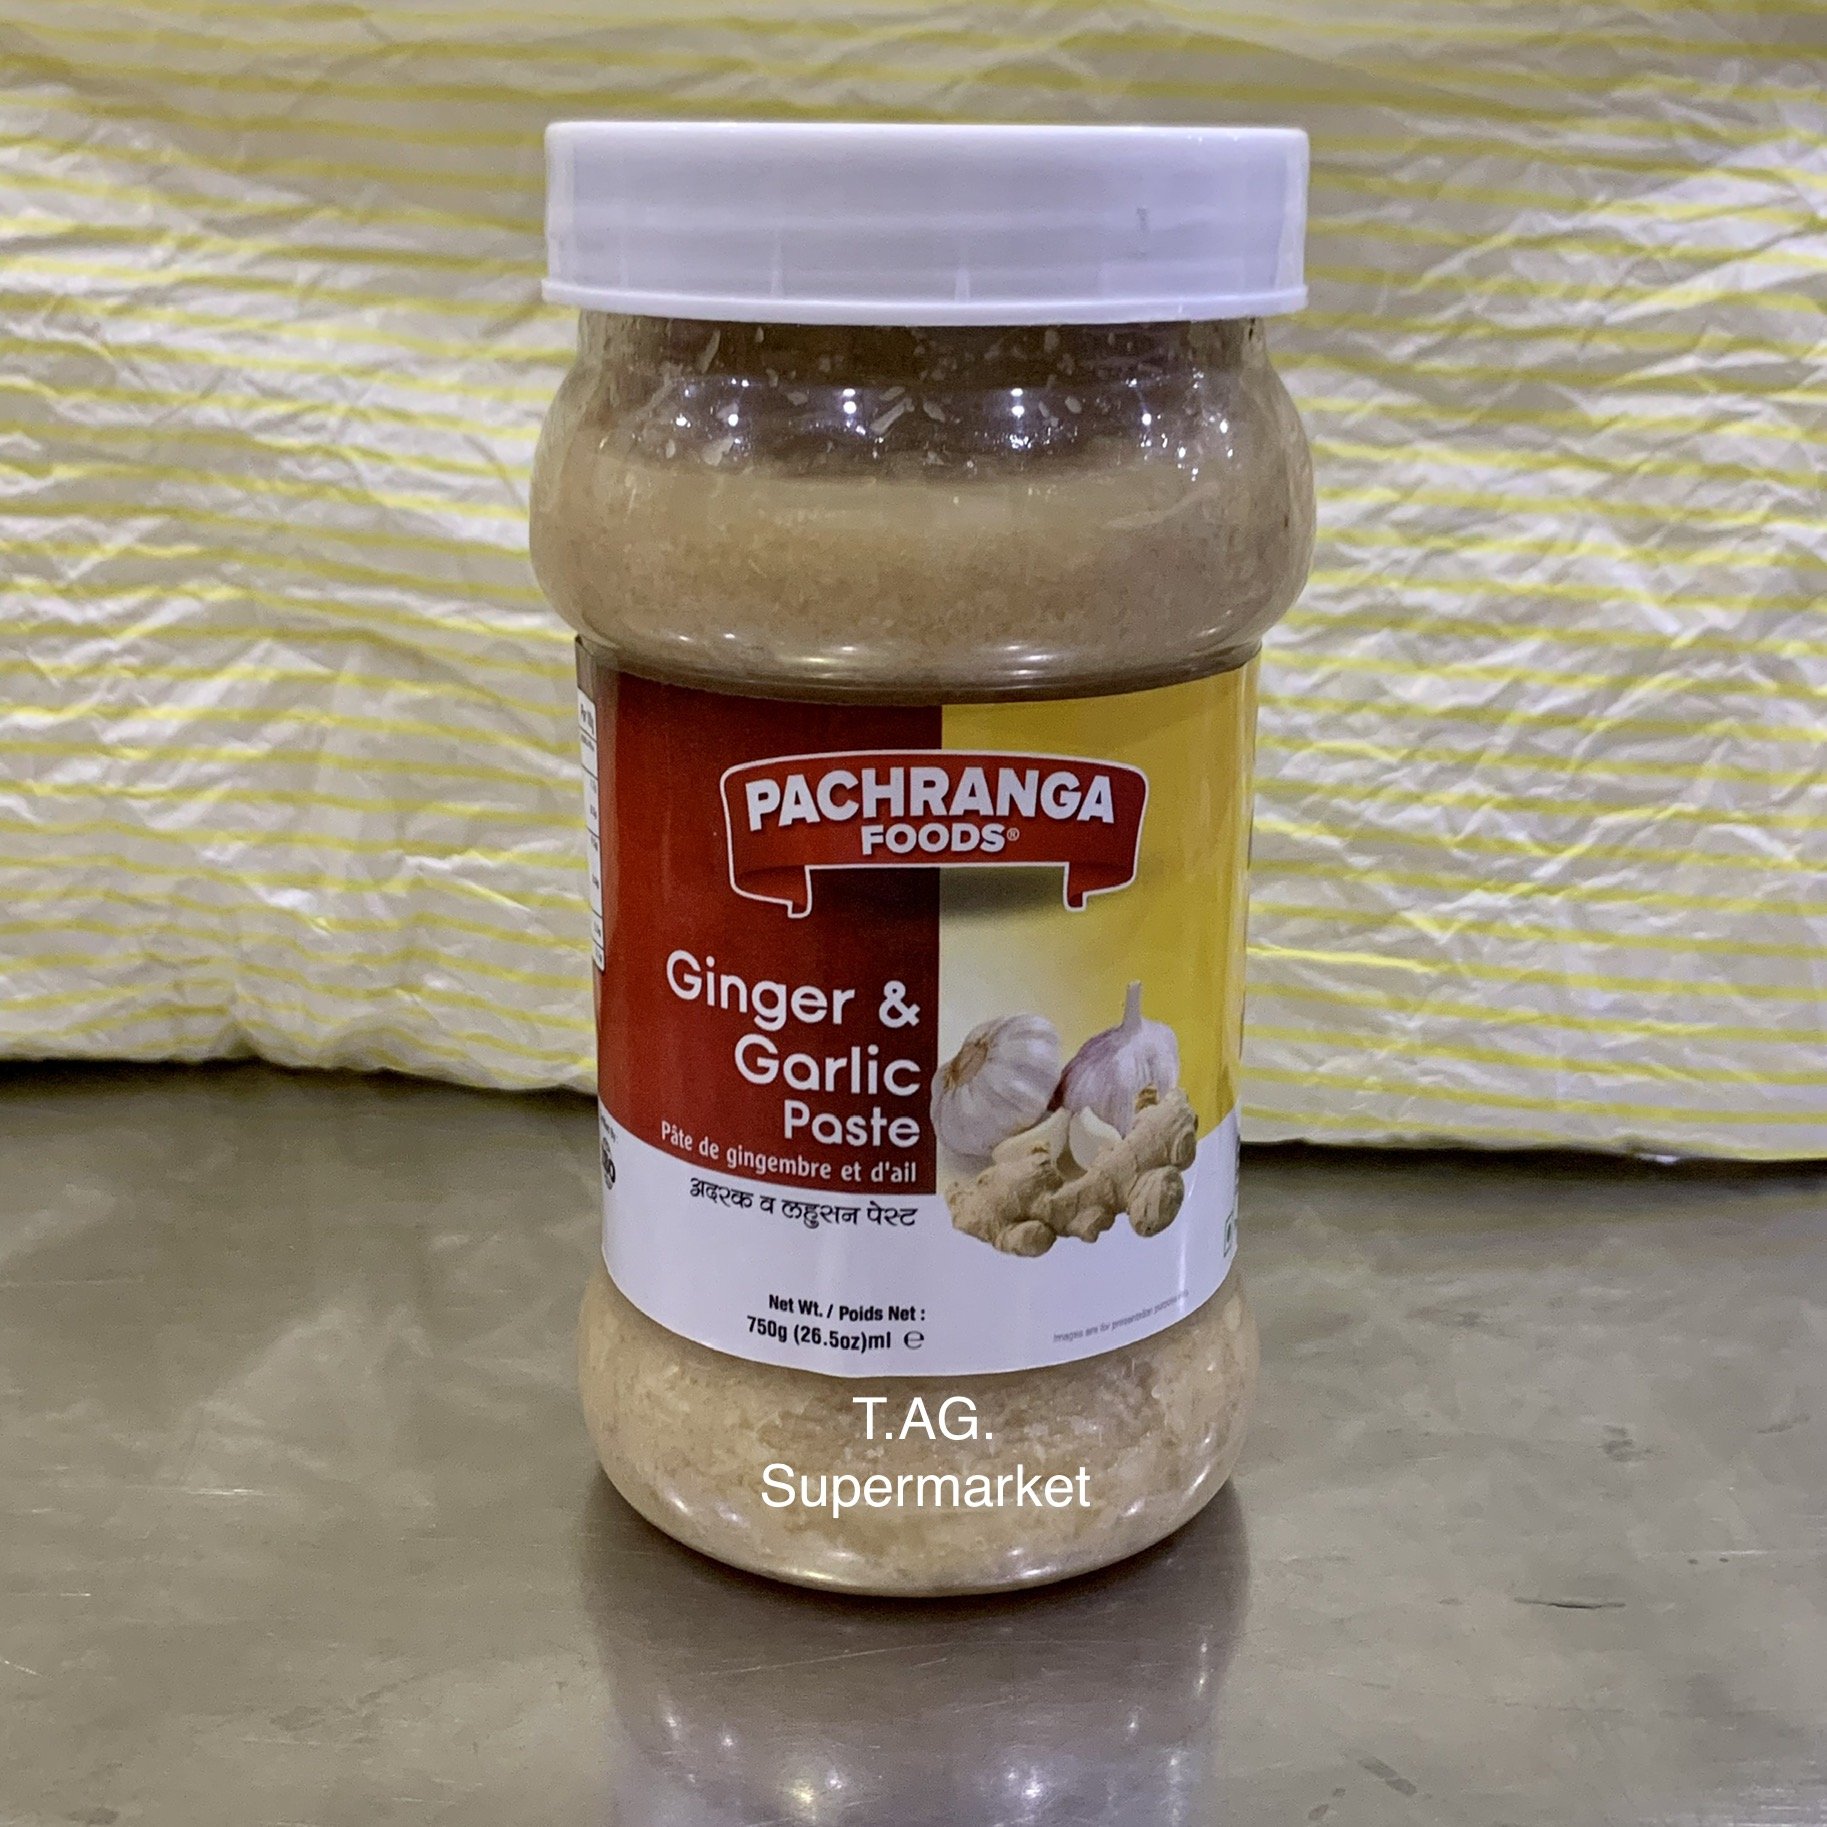 Pachranga ginger & garlic paste 750g